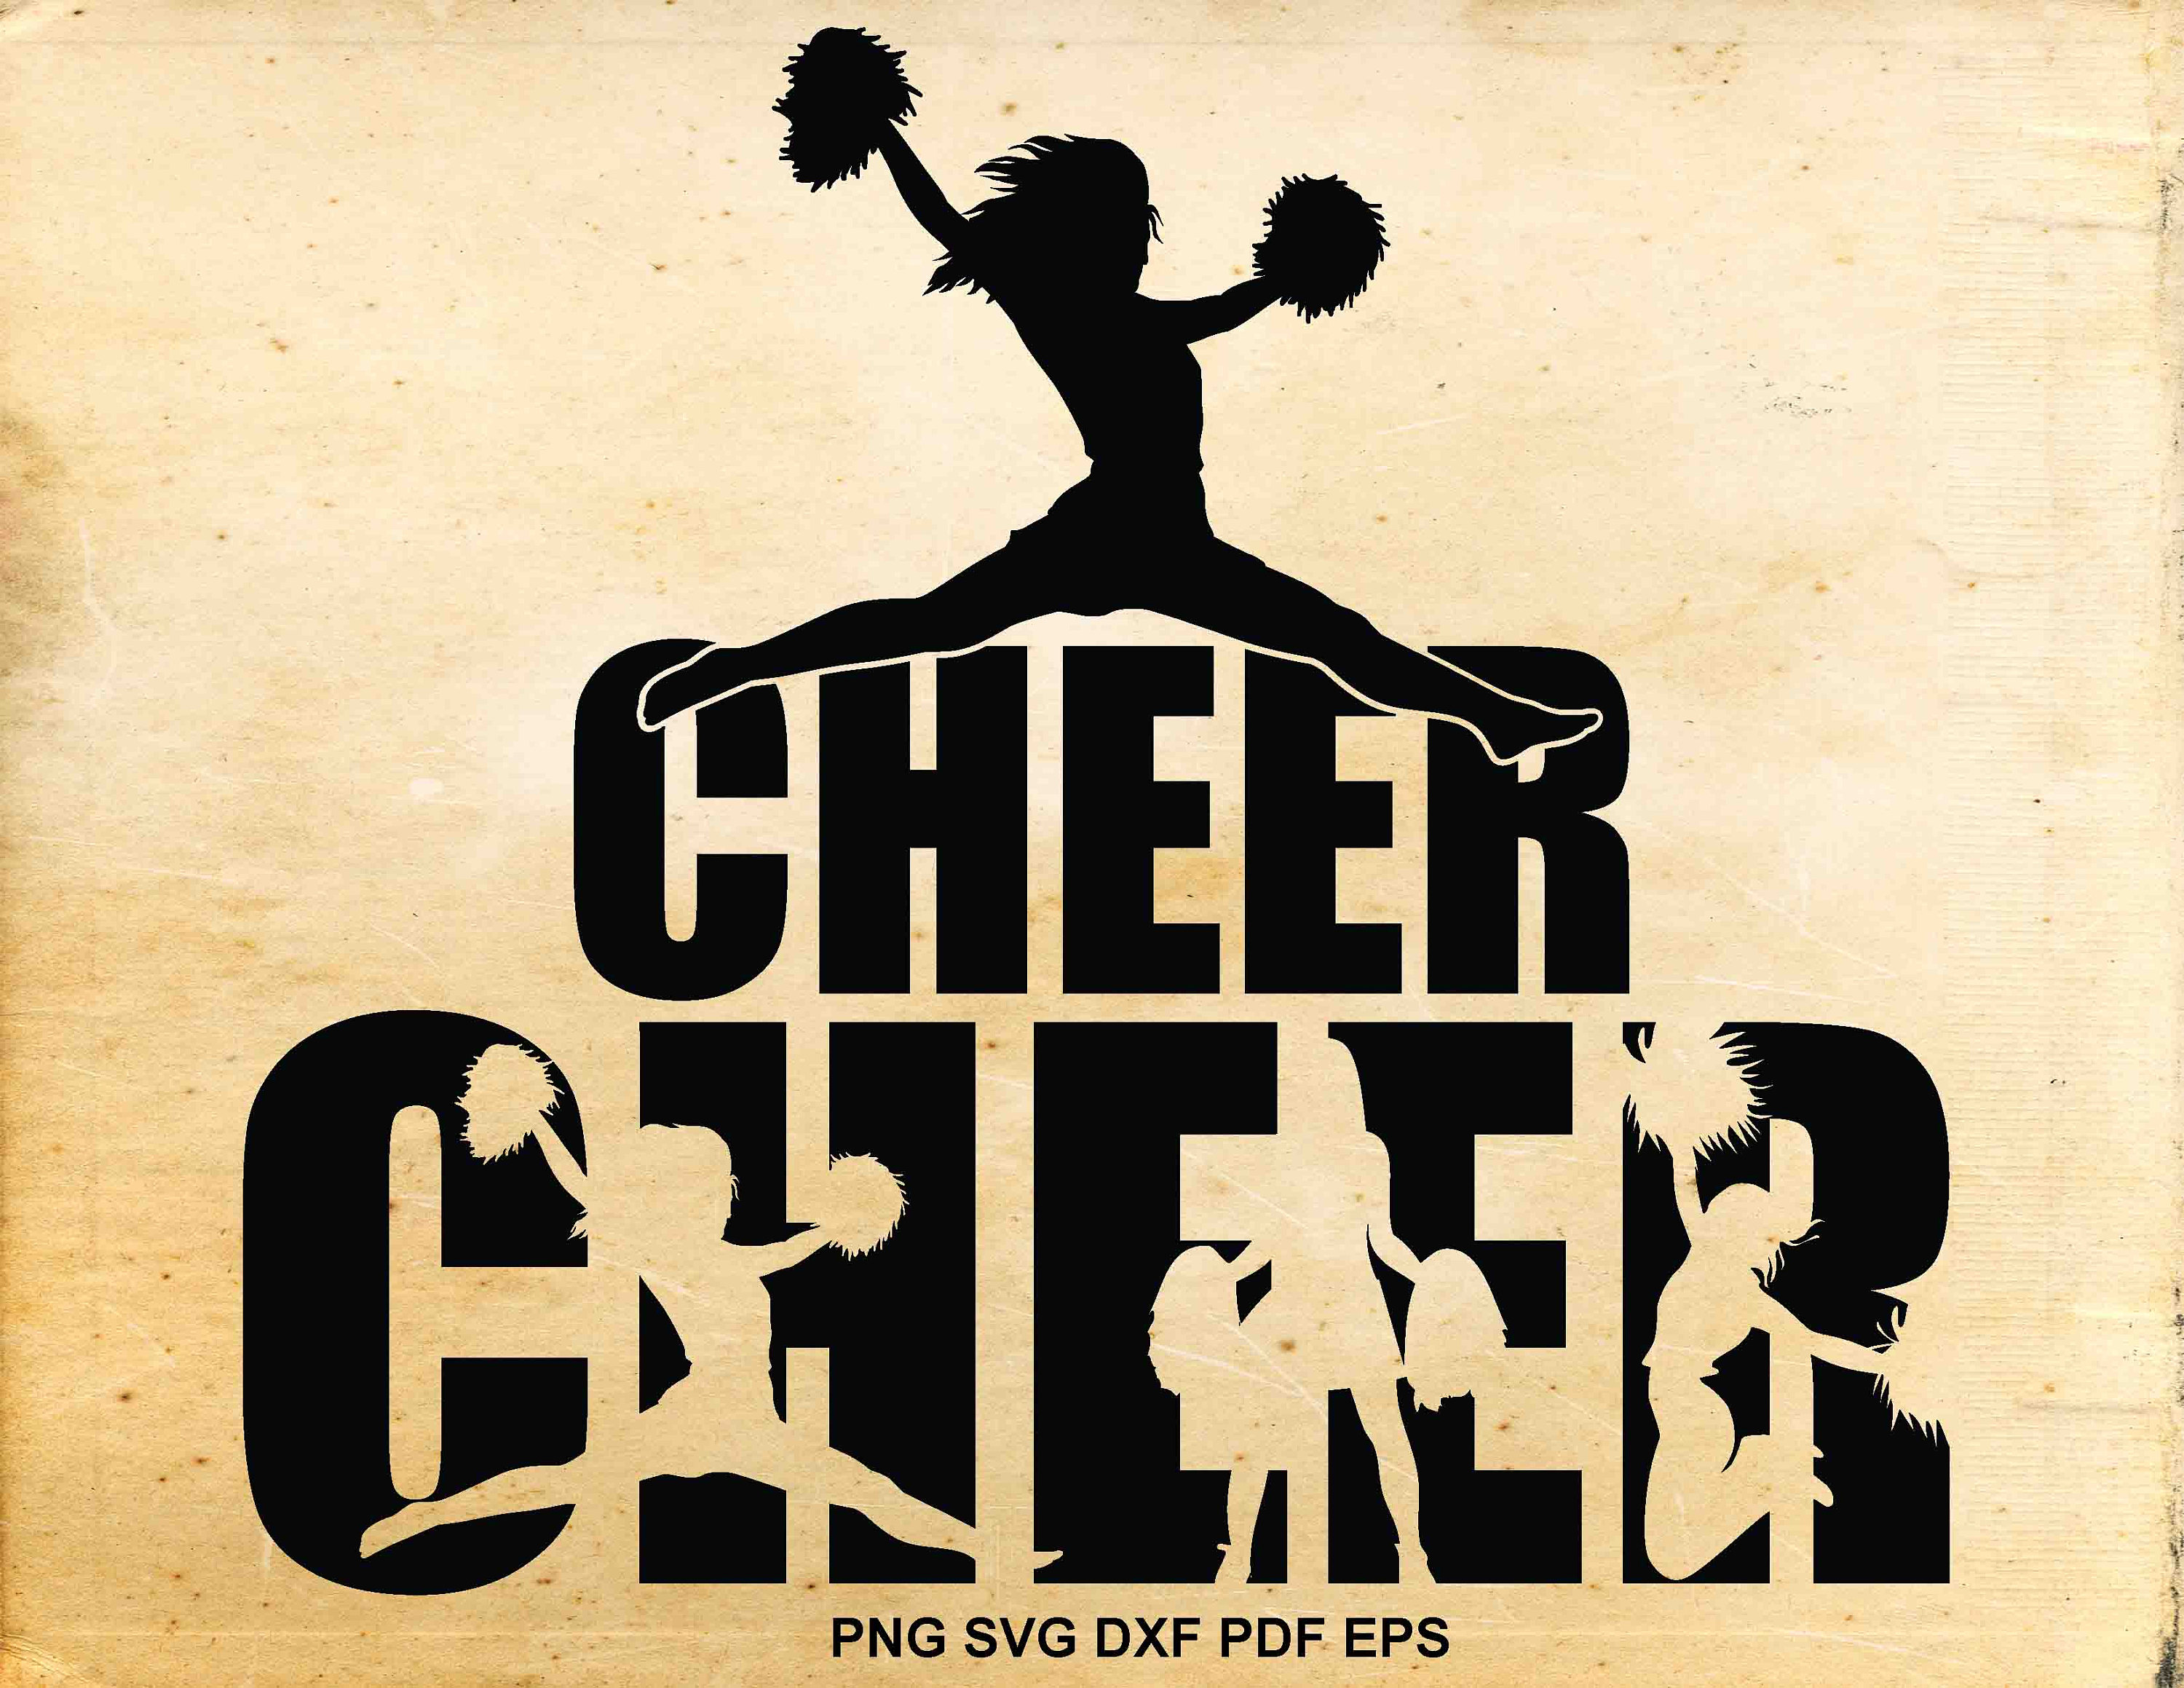 Cheerleader svg designs Cheerleader clipart Cheer svg files | Etsy